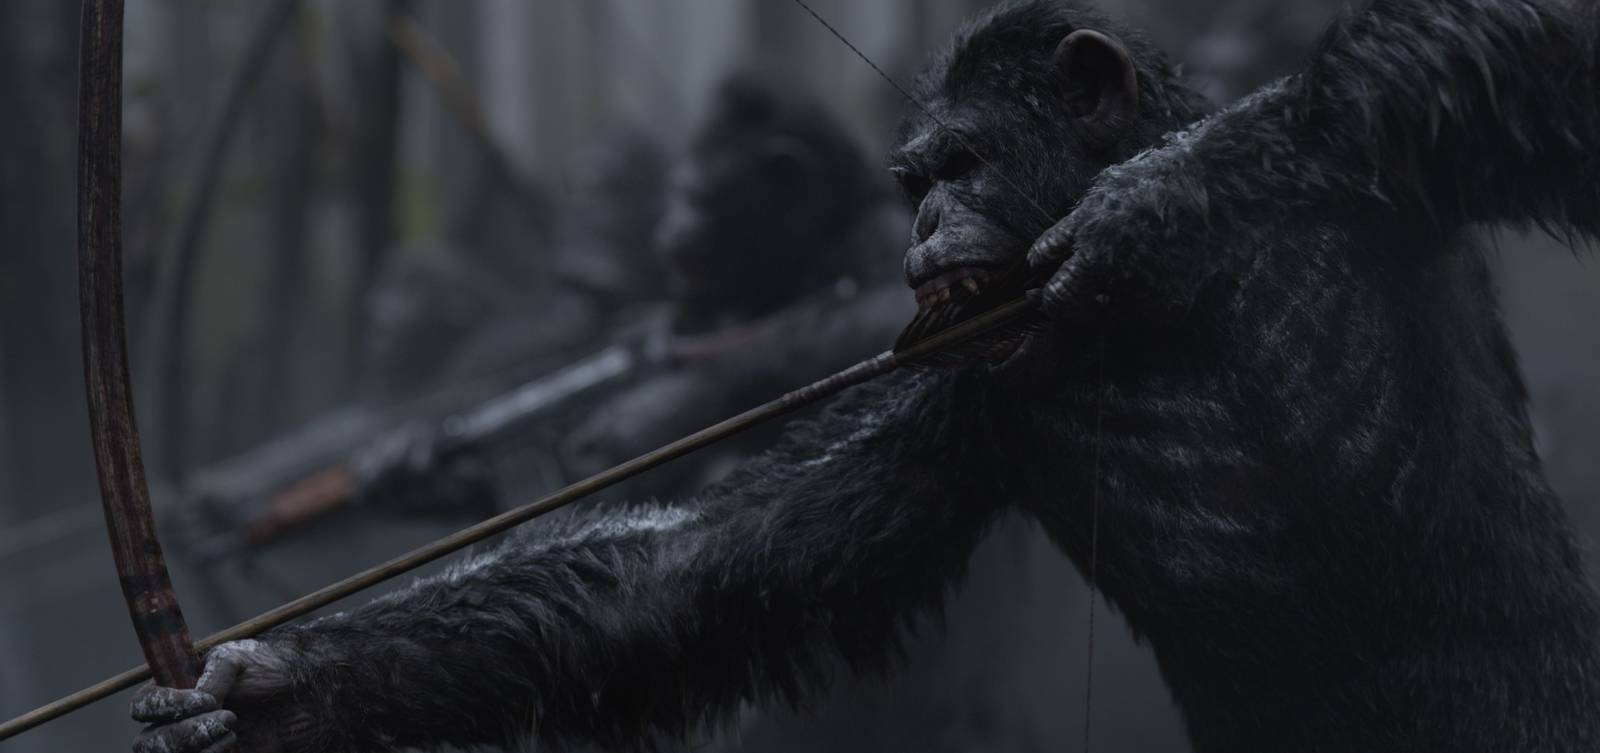 Vojna o planétu opíc (2017) - fotografie